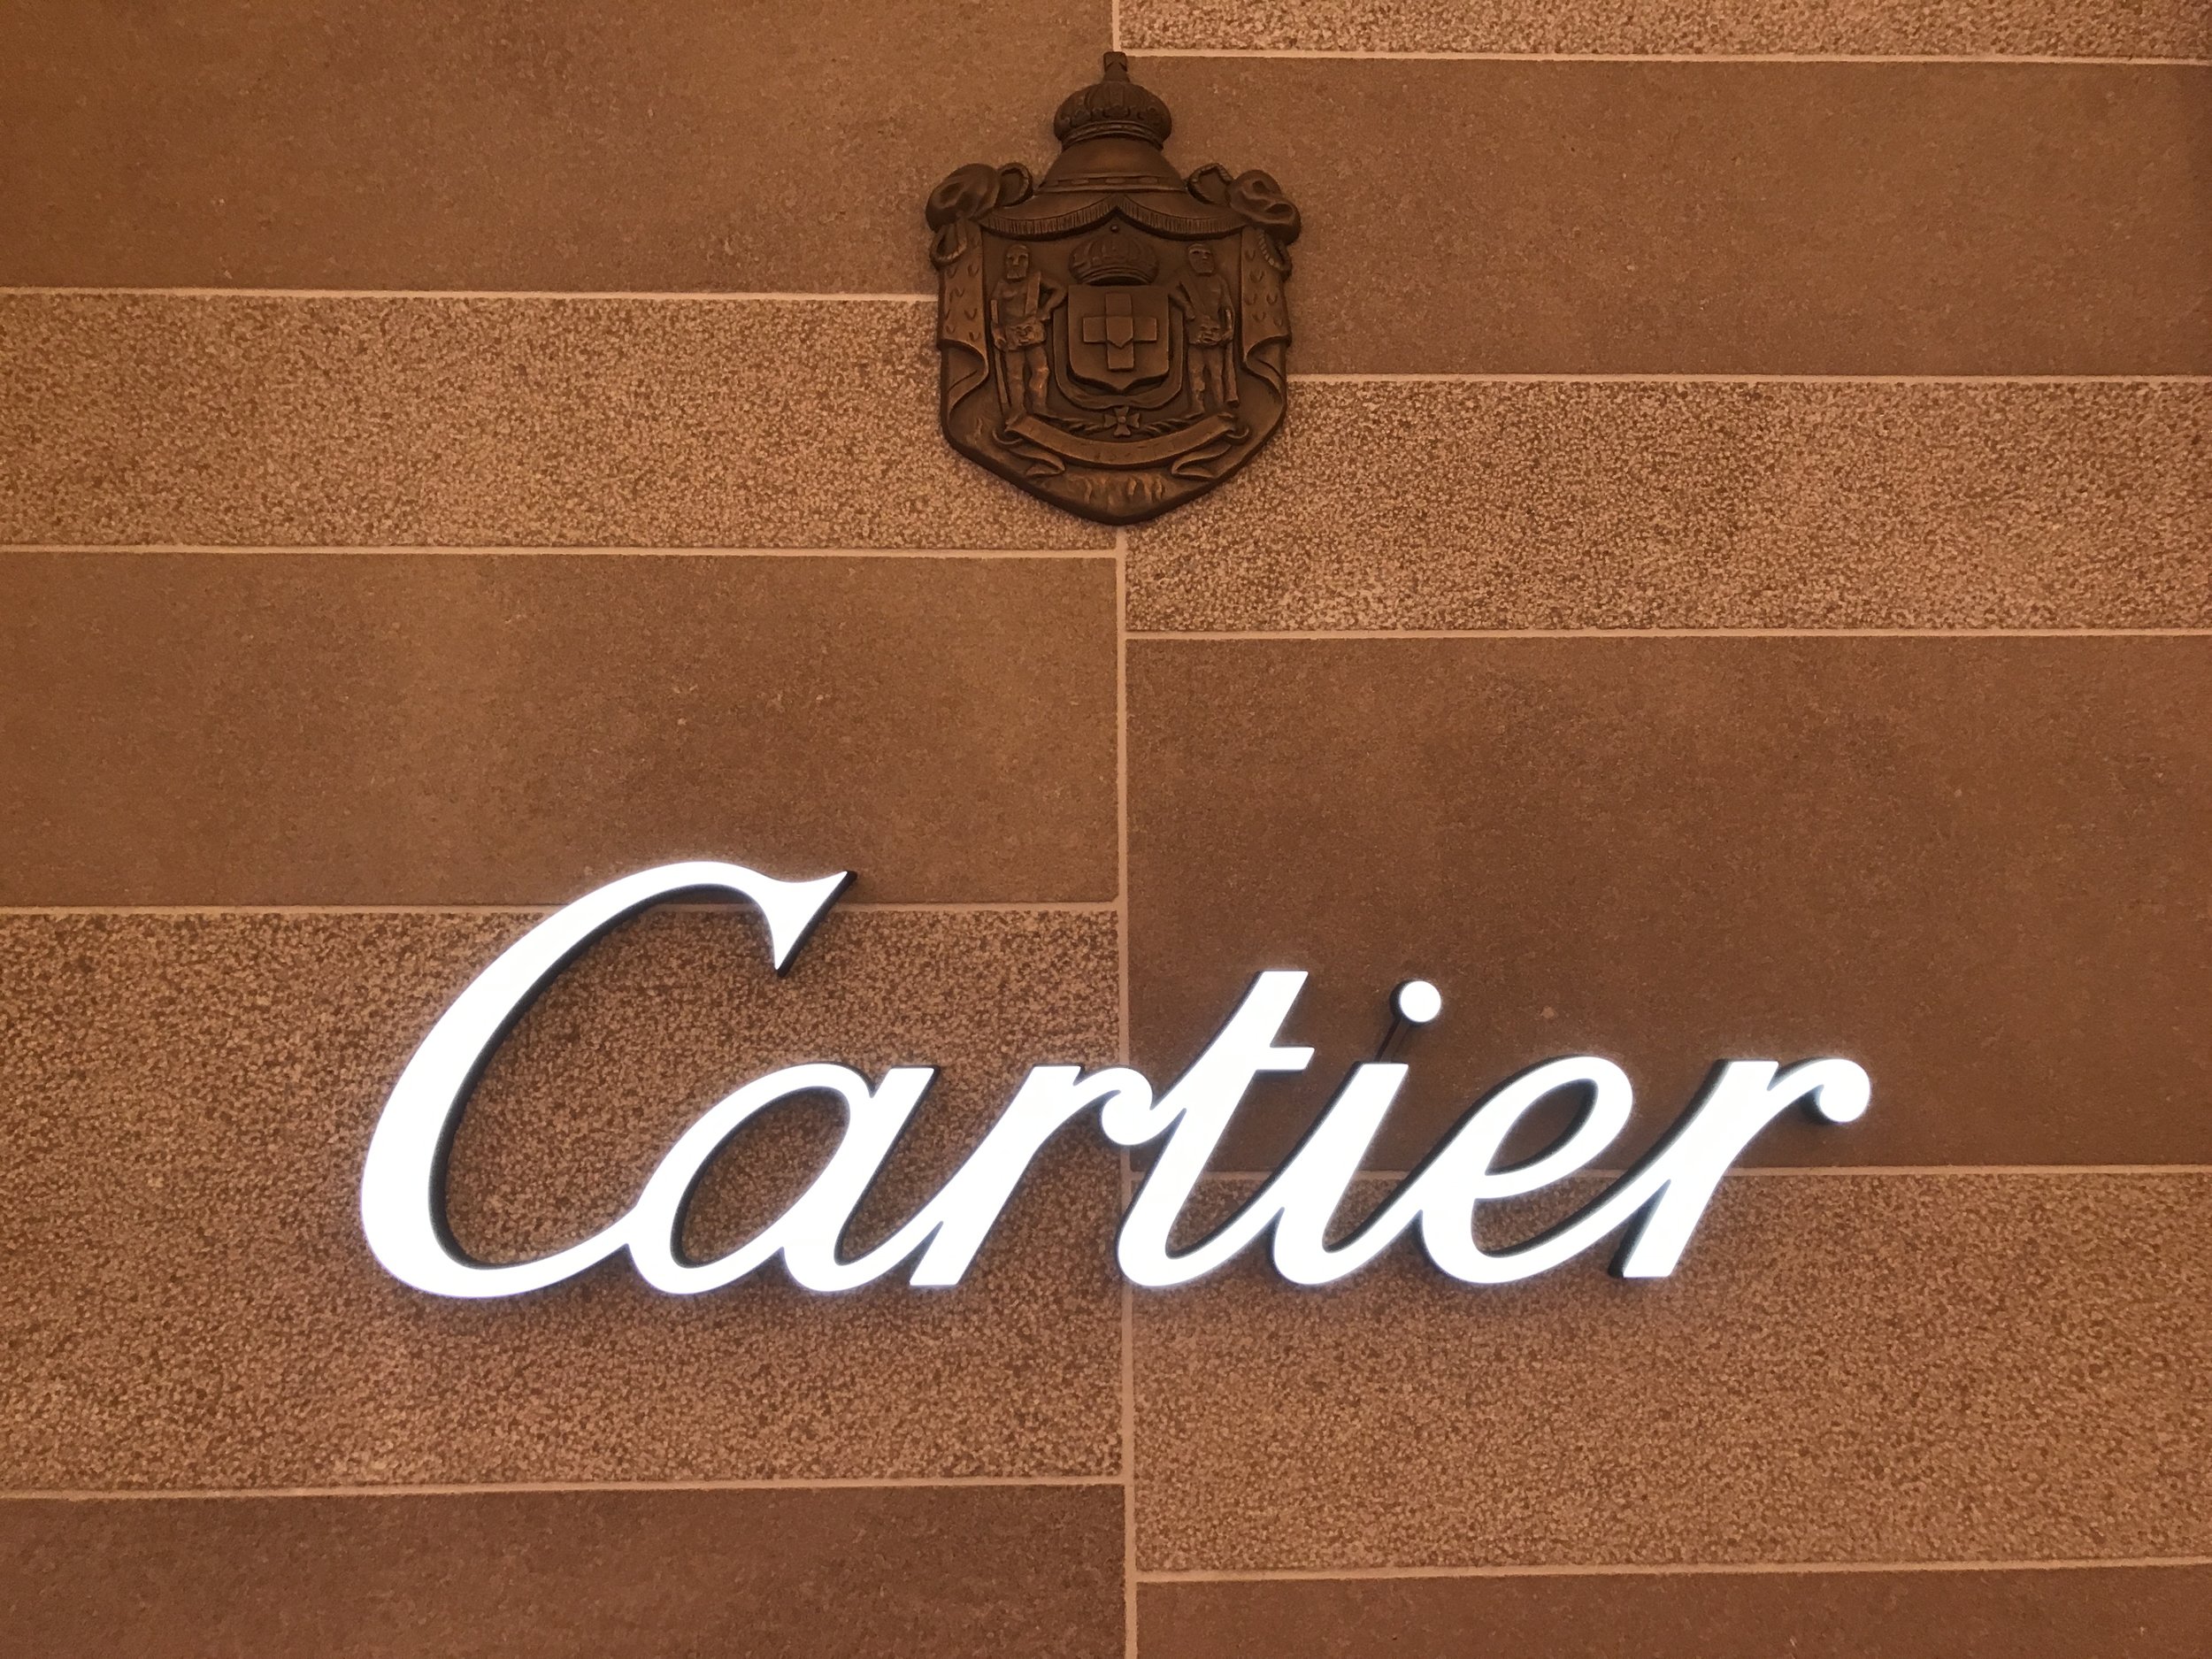 cartier store in delaware